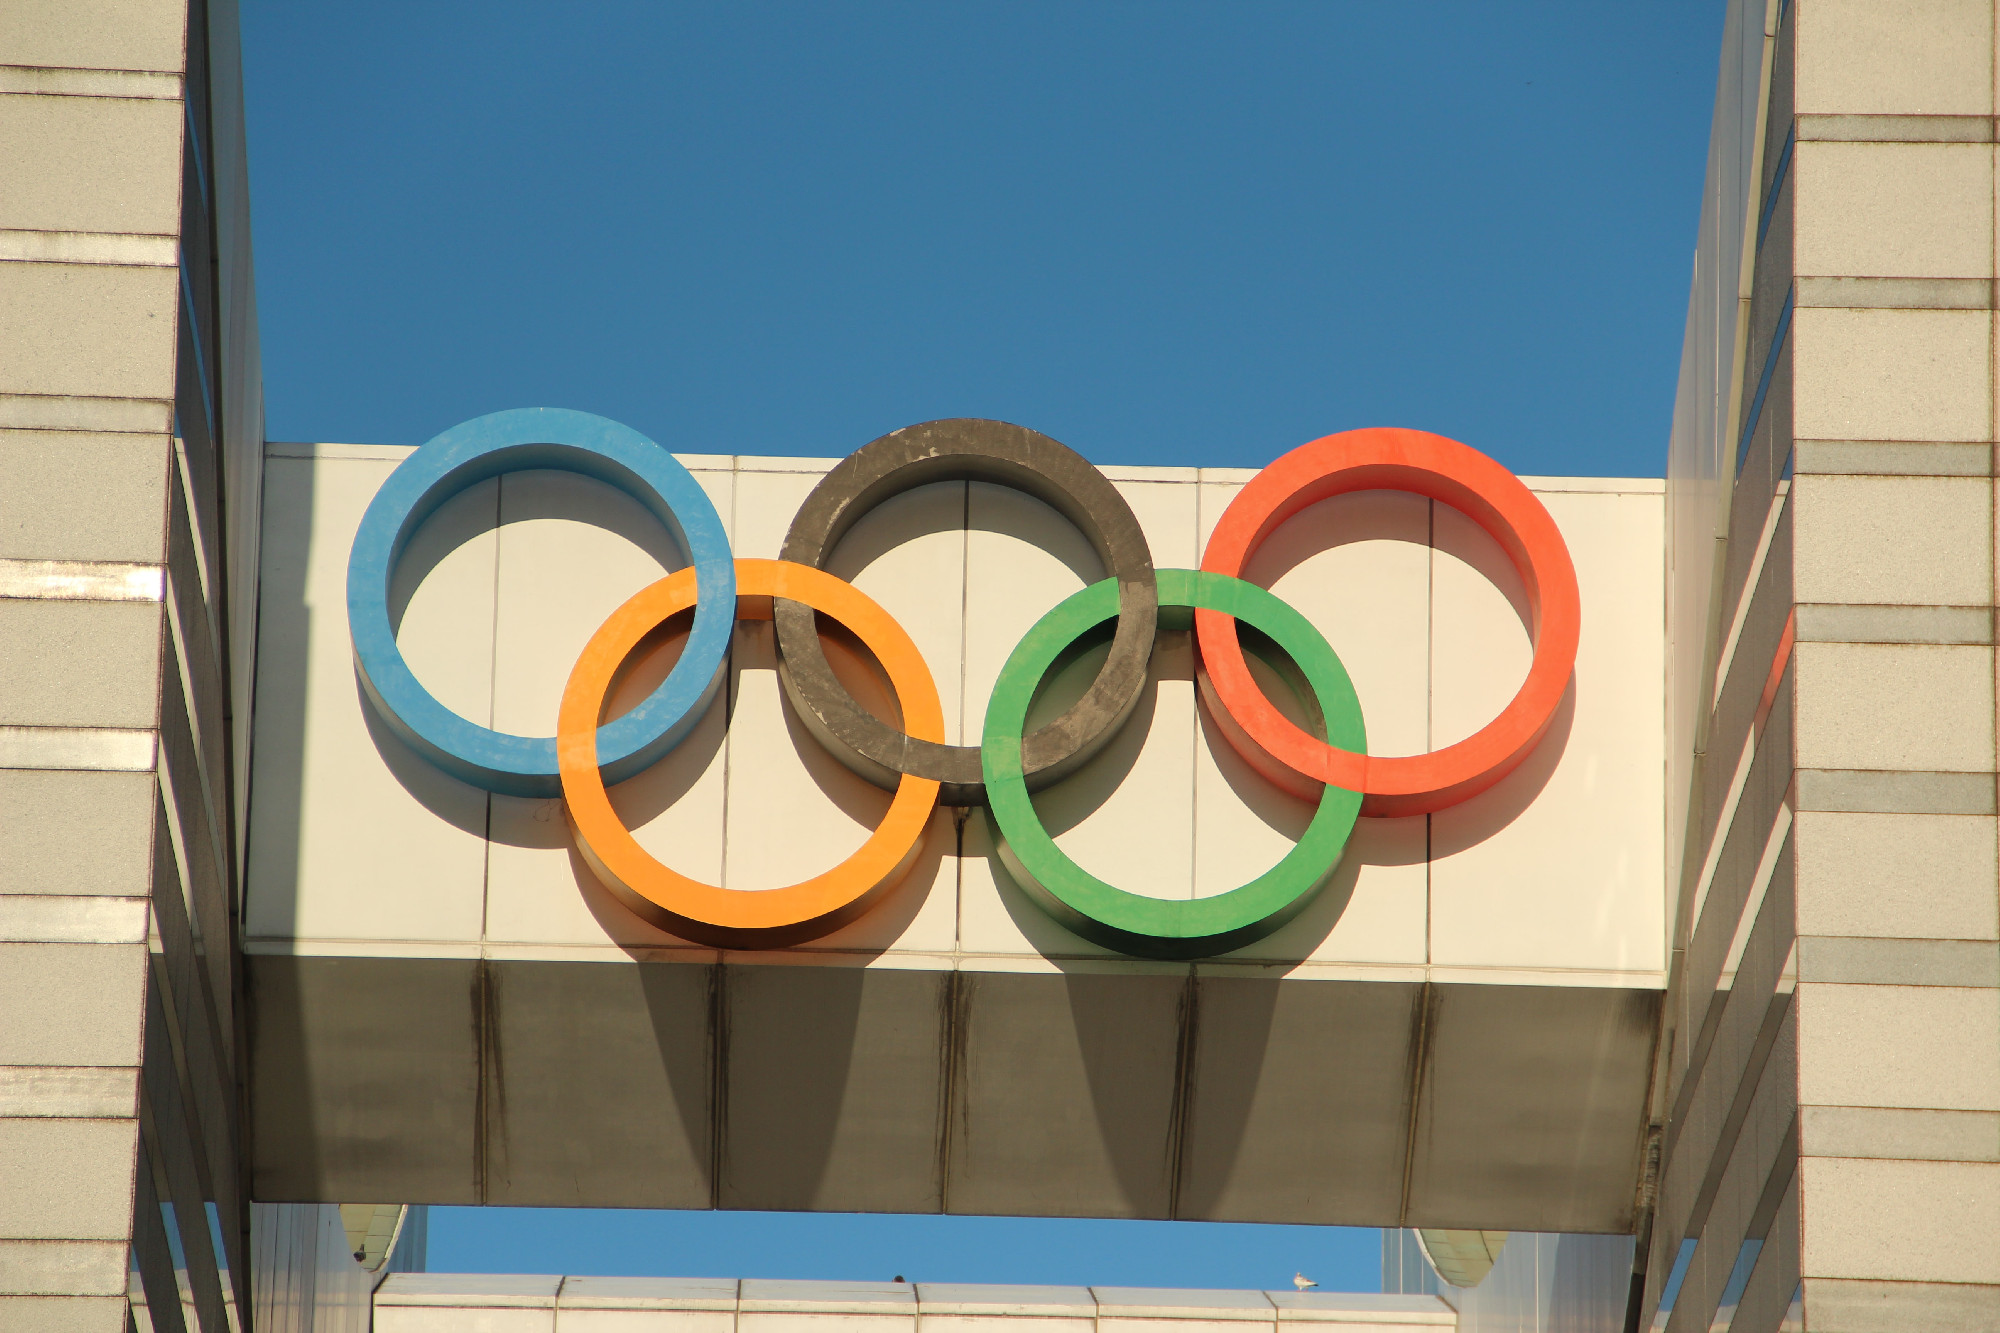 Közel hárommilliárd forinttal több állami támogatást kapnak idén az olimpiai sportágak